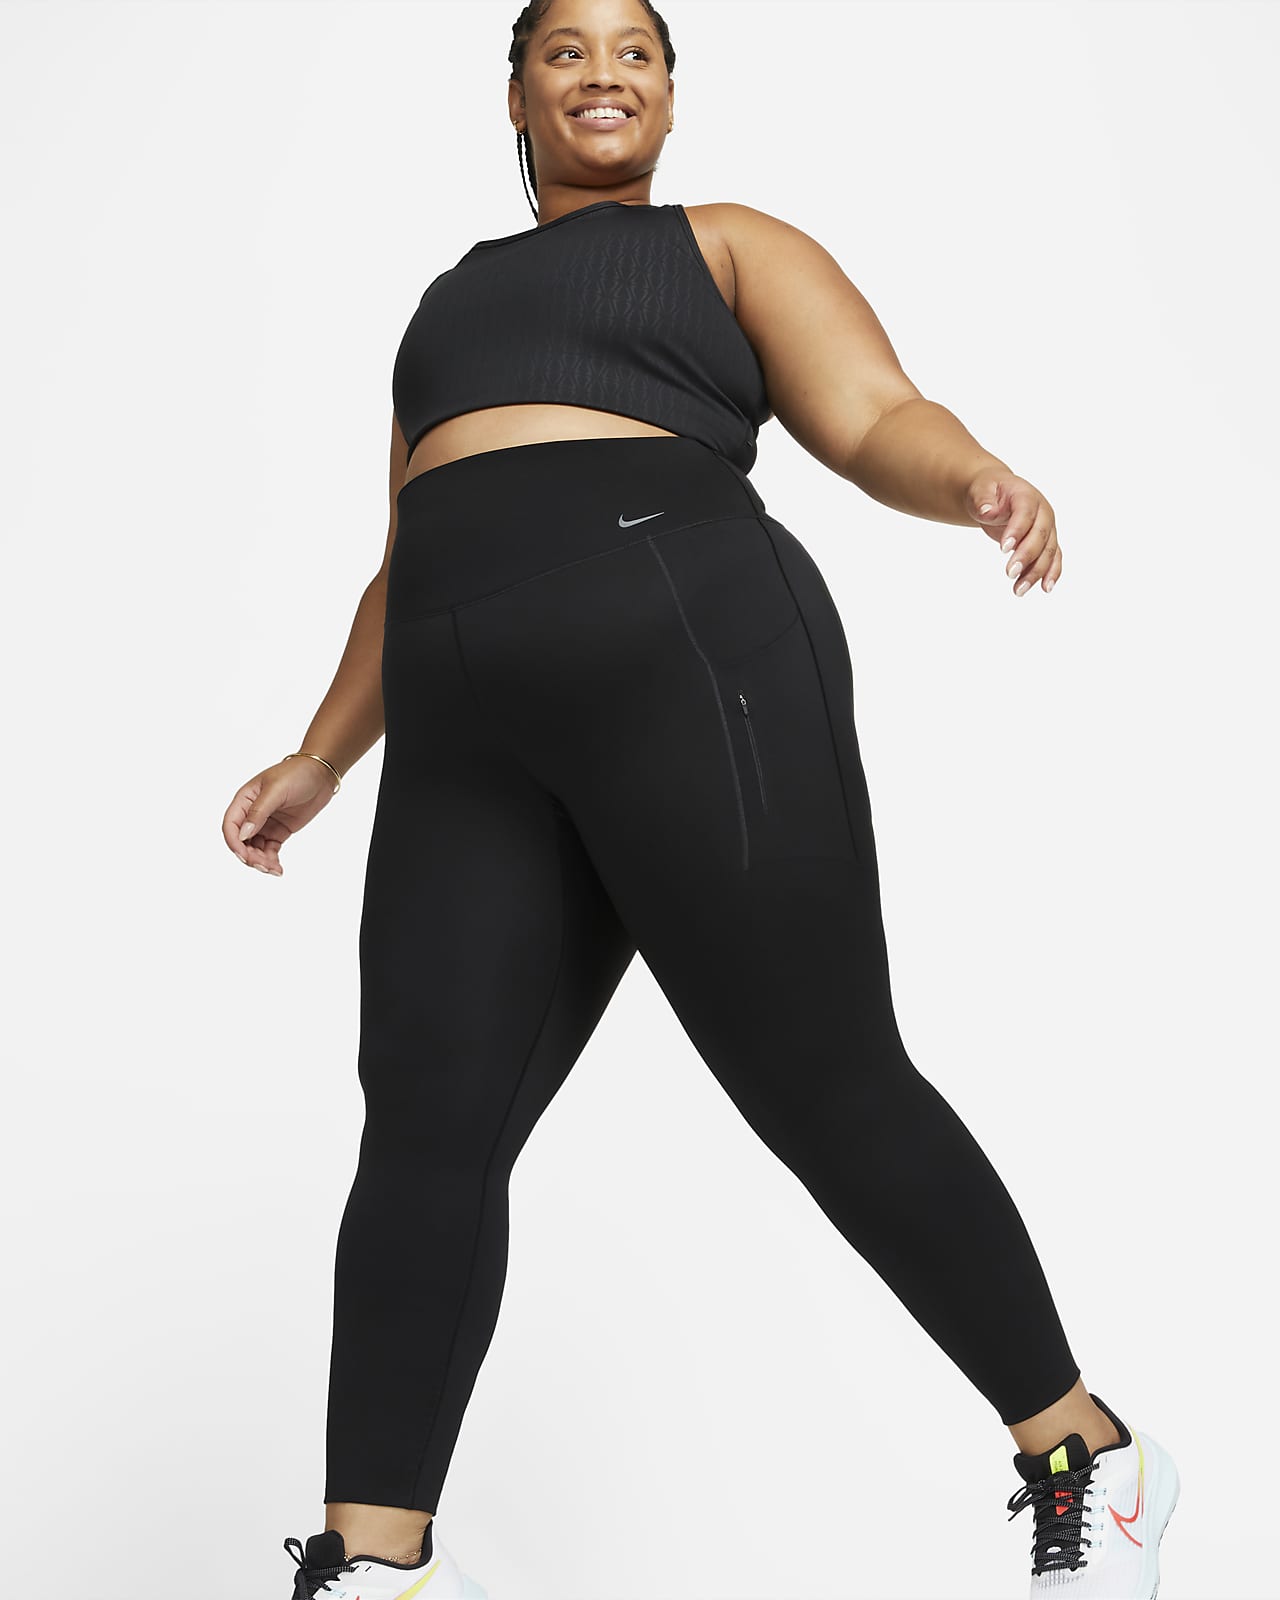 Γυναικείο ψηλόμεσο κολάν σε κανονικό μήκος με σταθερή στήριξη και τσέπες Nike Go (μεγάλα μεγέθη)